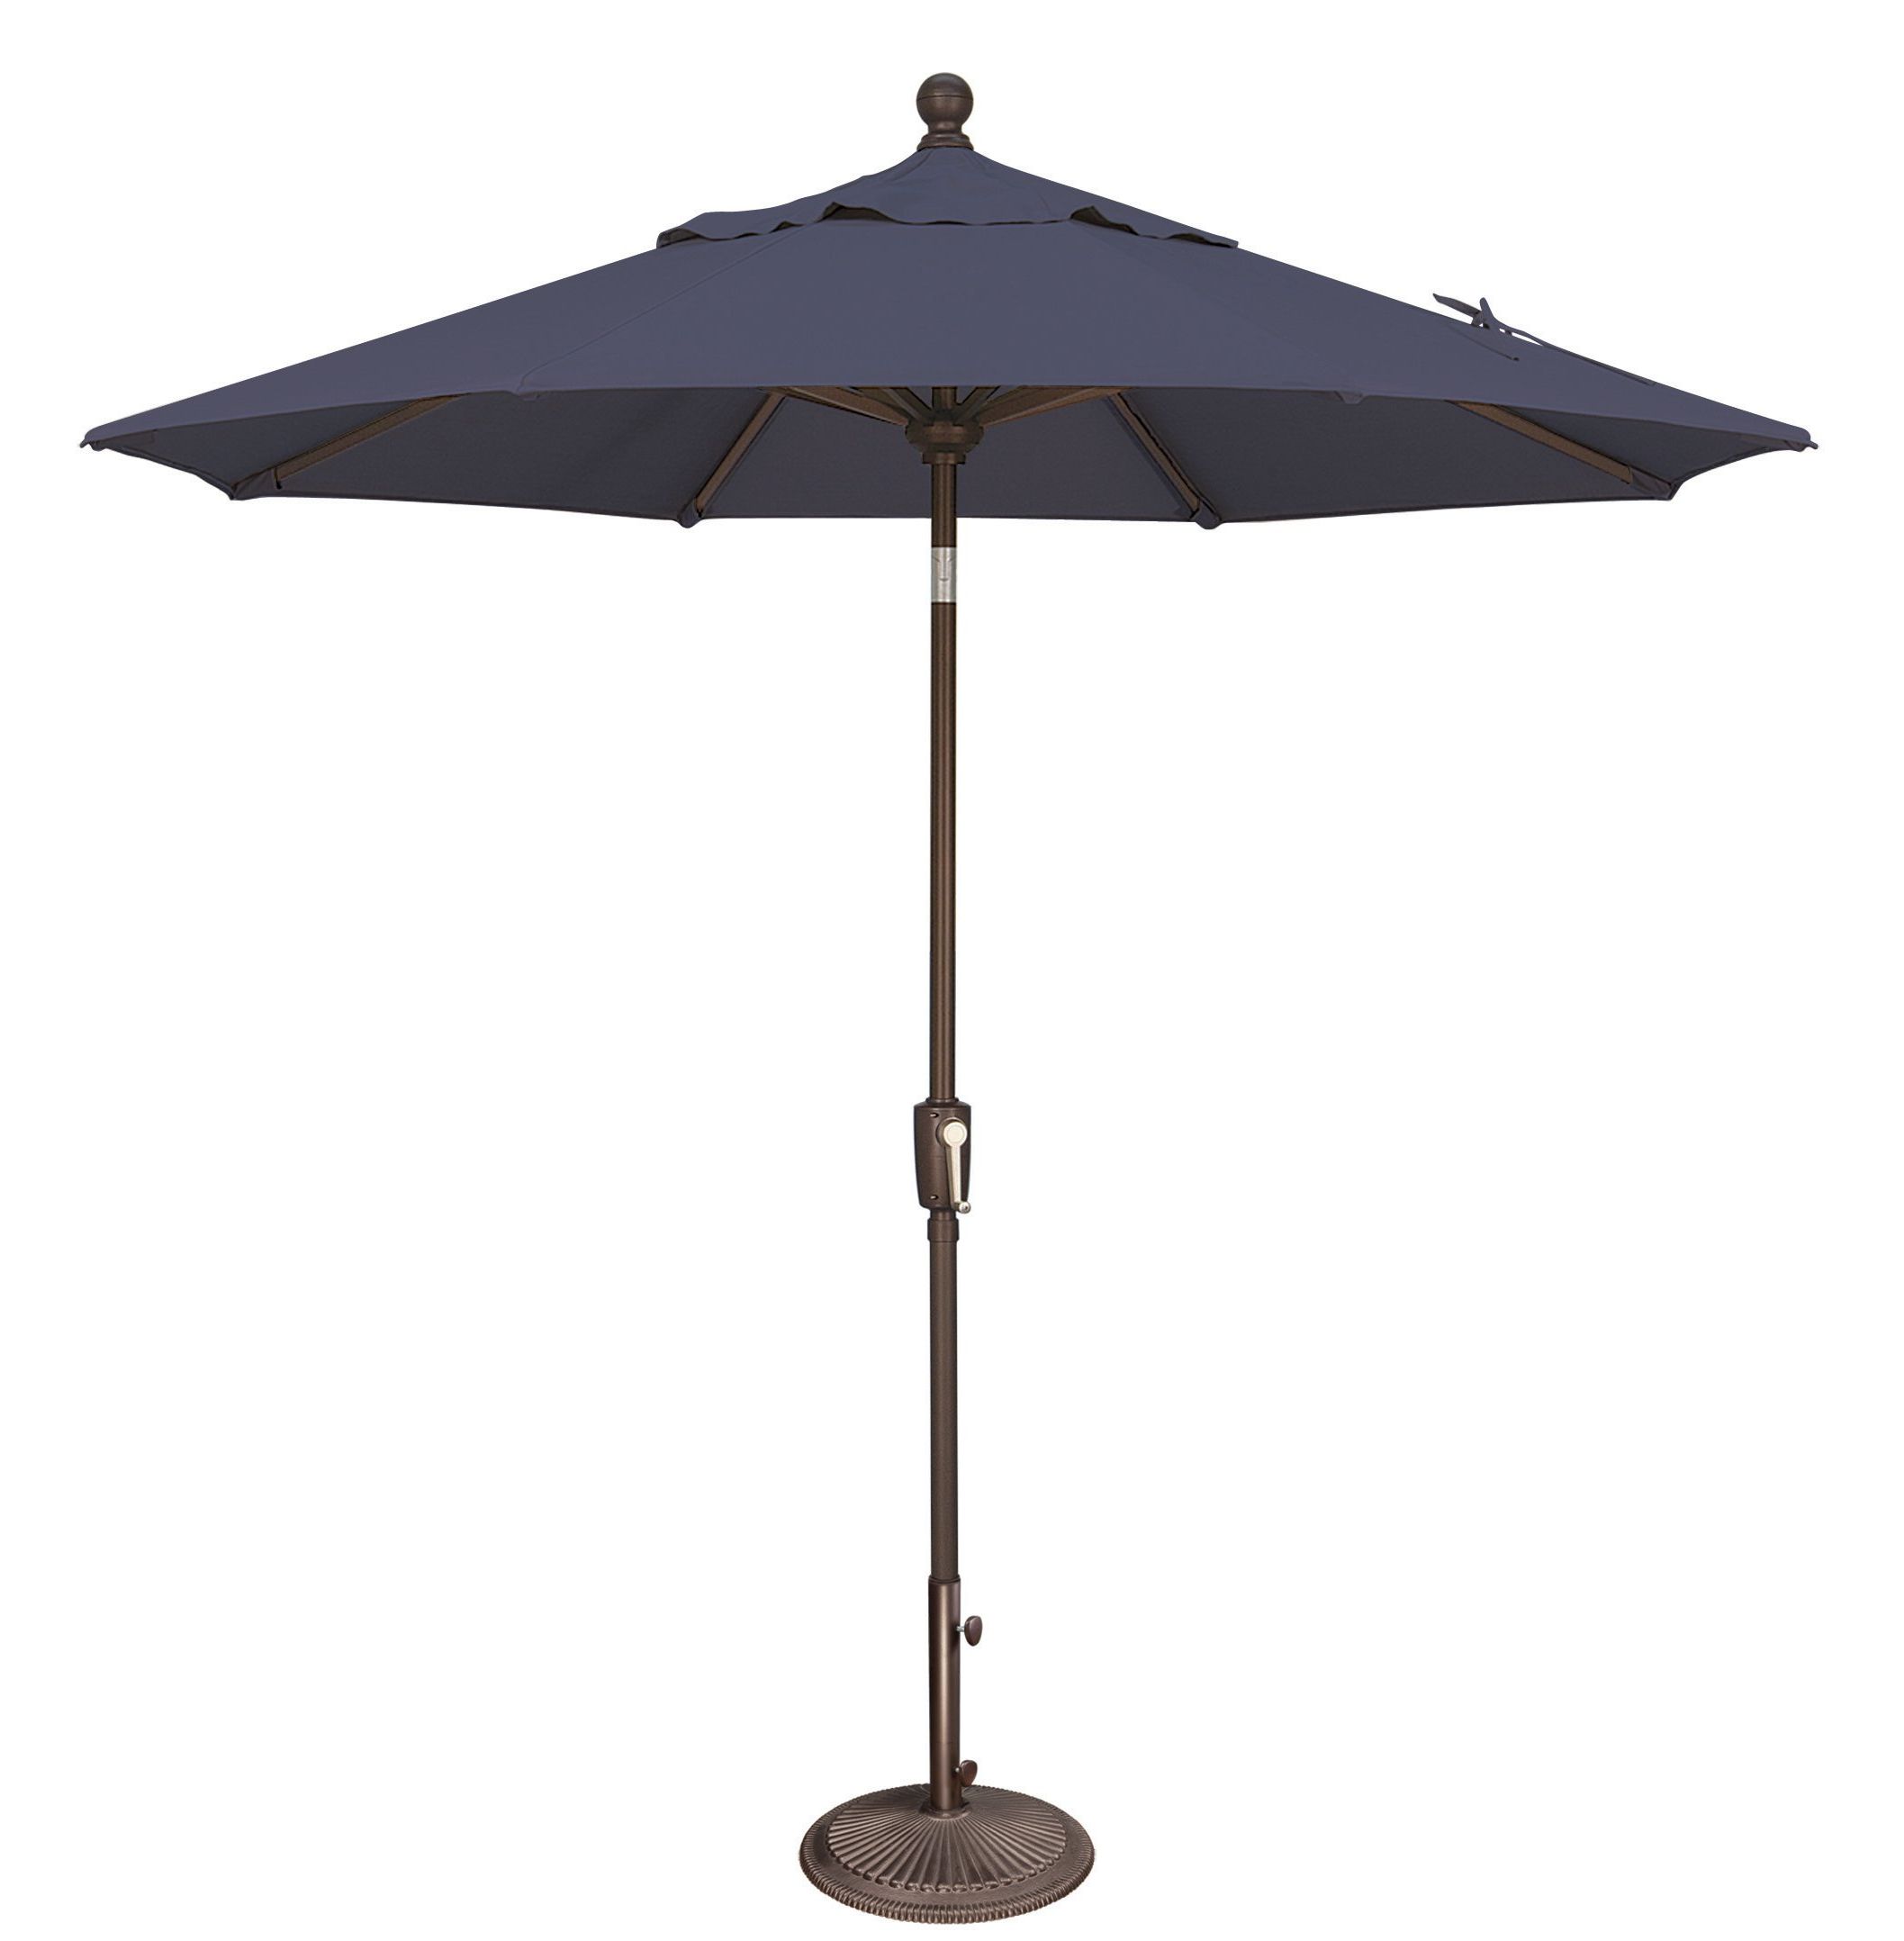 Cardine Market Umbrellas Regarding Popular Launceston 7.5' Market Umbrella (Photo 10 of 20)